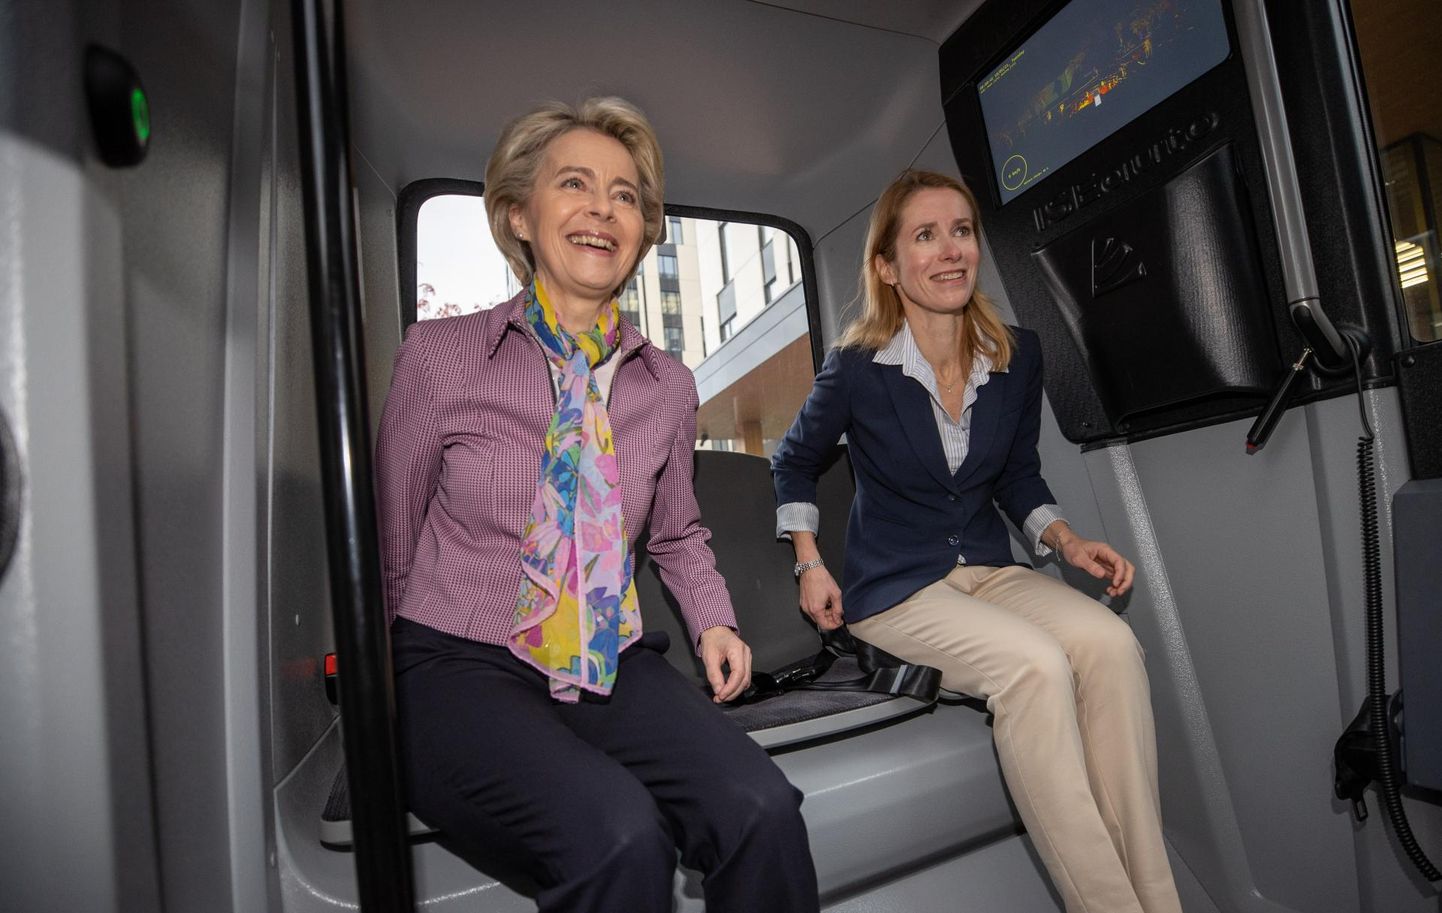 Euroopa Komisjoni president Ursula von der Leyen (vasakul) ja Eesti peaminister Kaja Kallas tiirutasid eile hommikul Ülemiste linnakus ringi isejuhtiva bussiga. Von der Leyenile tekitas esmakogemus soovi sarnast sõidukit uuesti proovida.